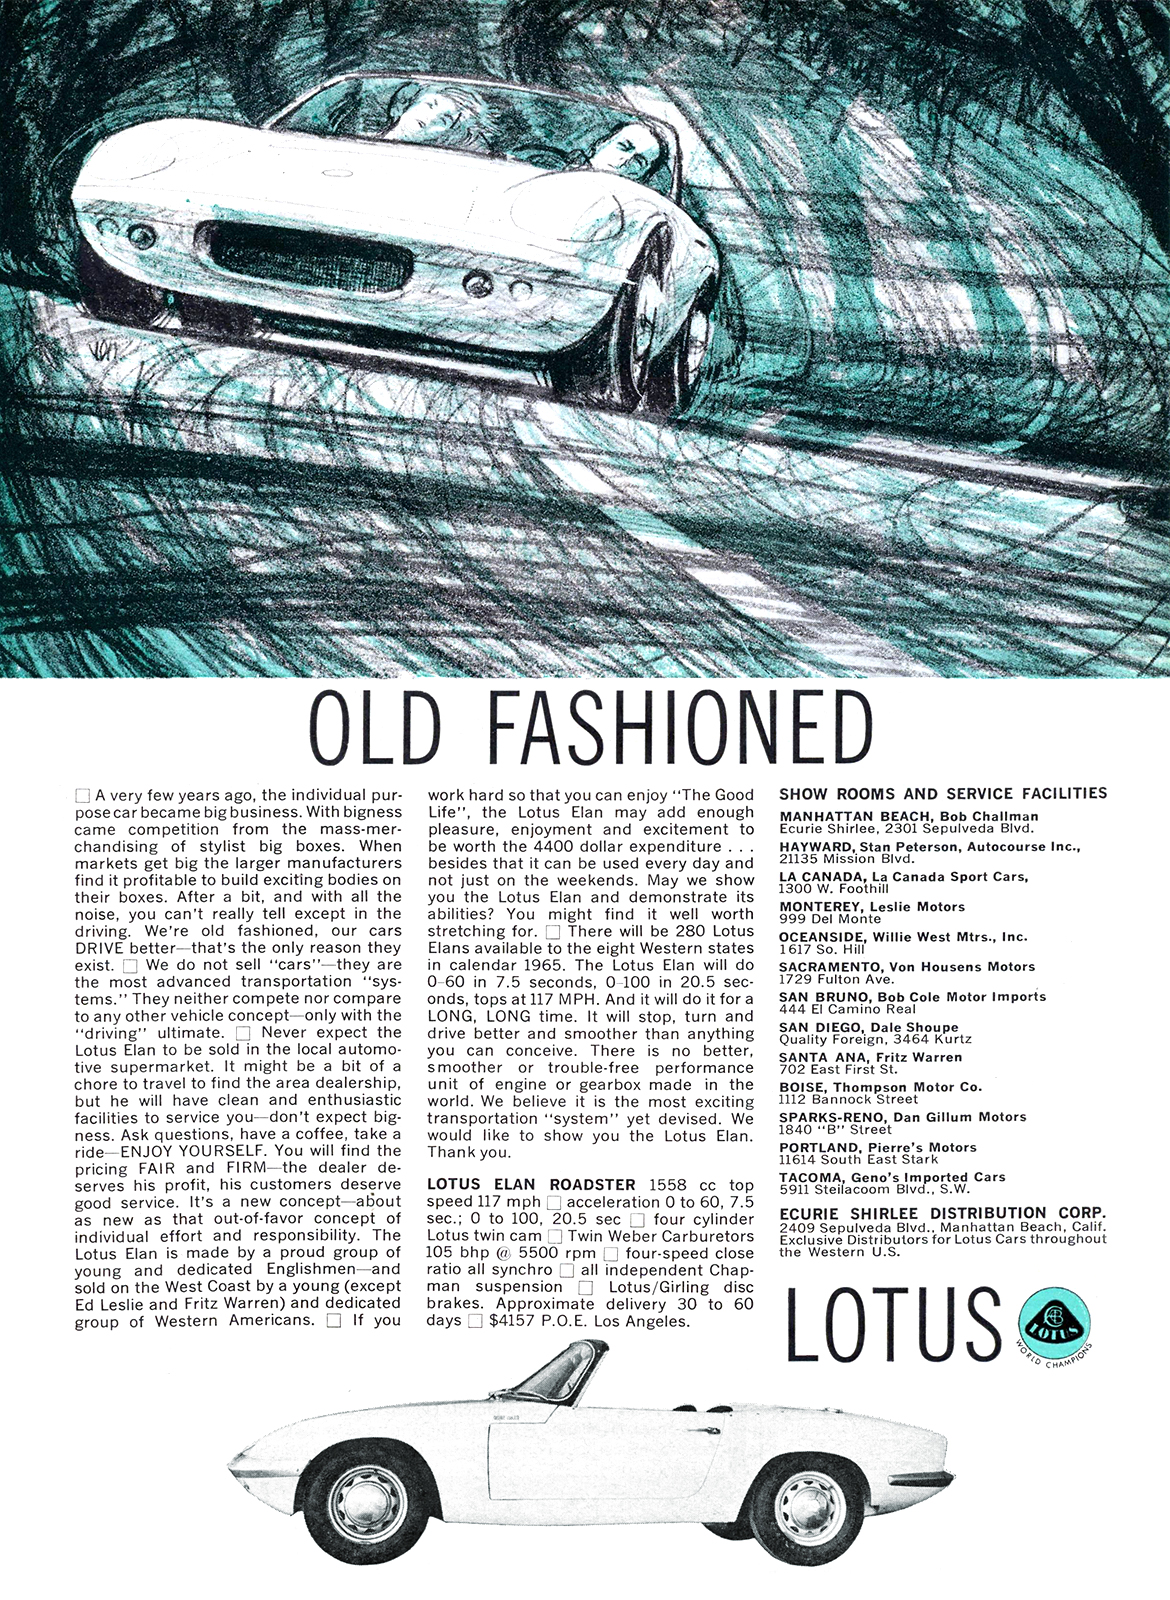 Lotus Elan Roadster Ad (June, 1965) - Old Fashioned